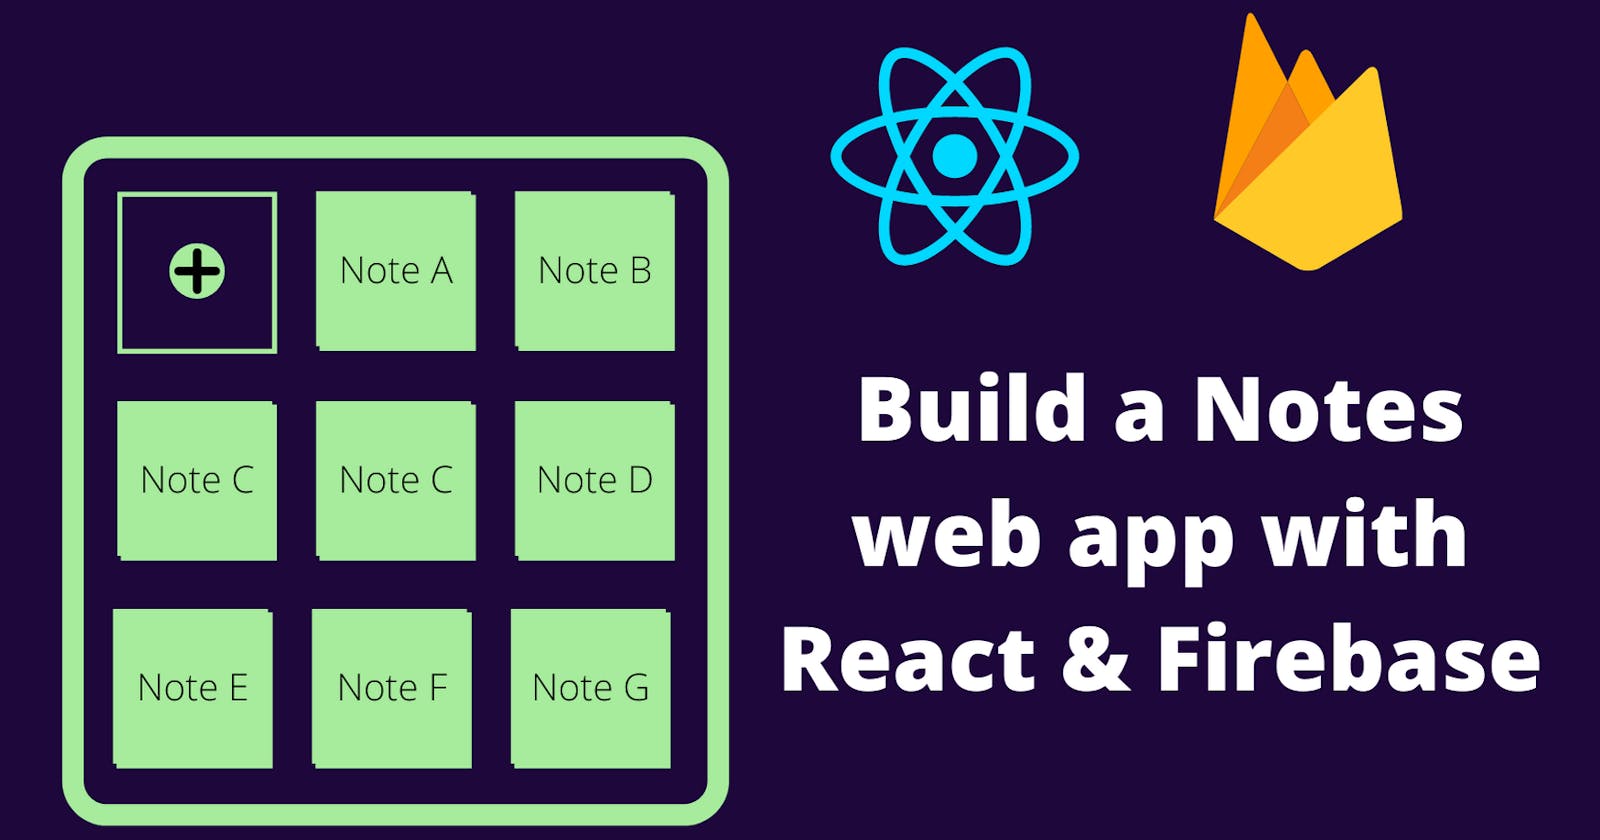 Build a Notes web app with React & Firebase